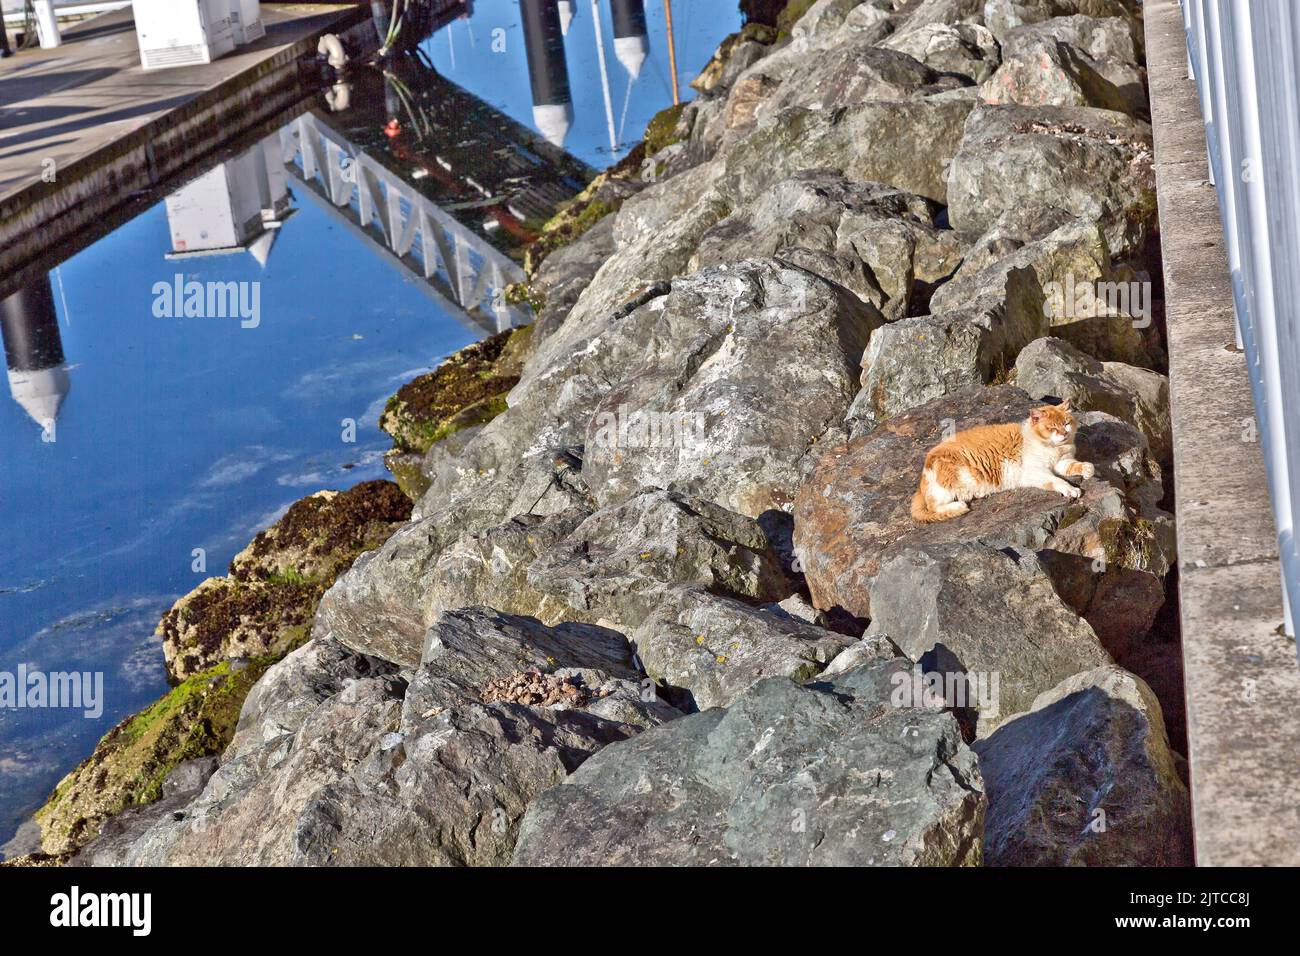 Sin hogar, abandonado, descuidado gato 'Felis catus' (gato de la casa), descansando entre rocas de refuerzo, después de la alimentación, muelle de barcos de pesca / puerto. Foto de stock